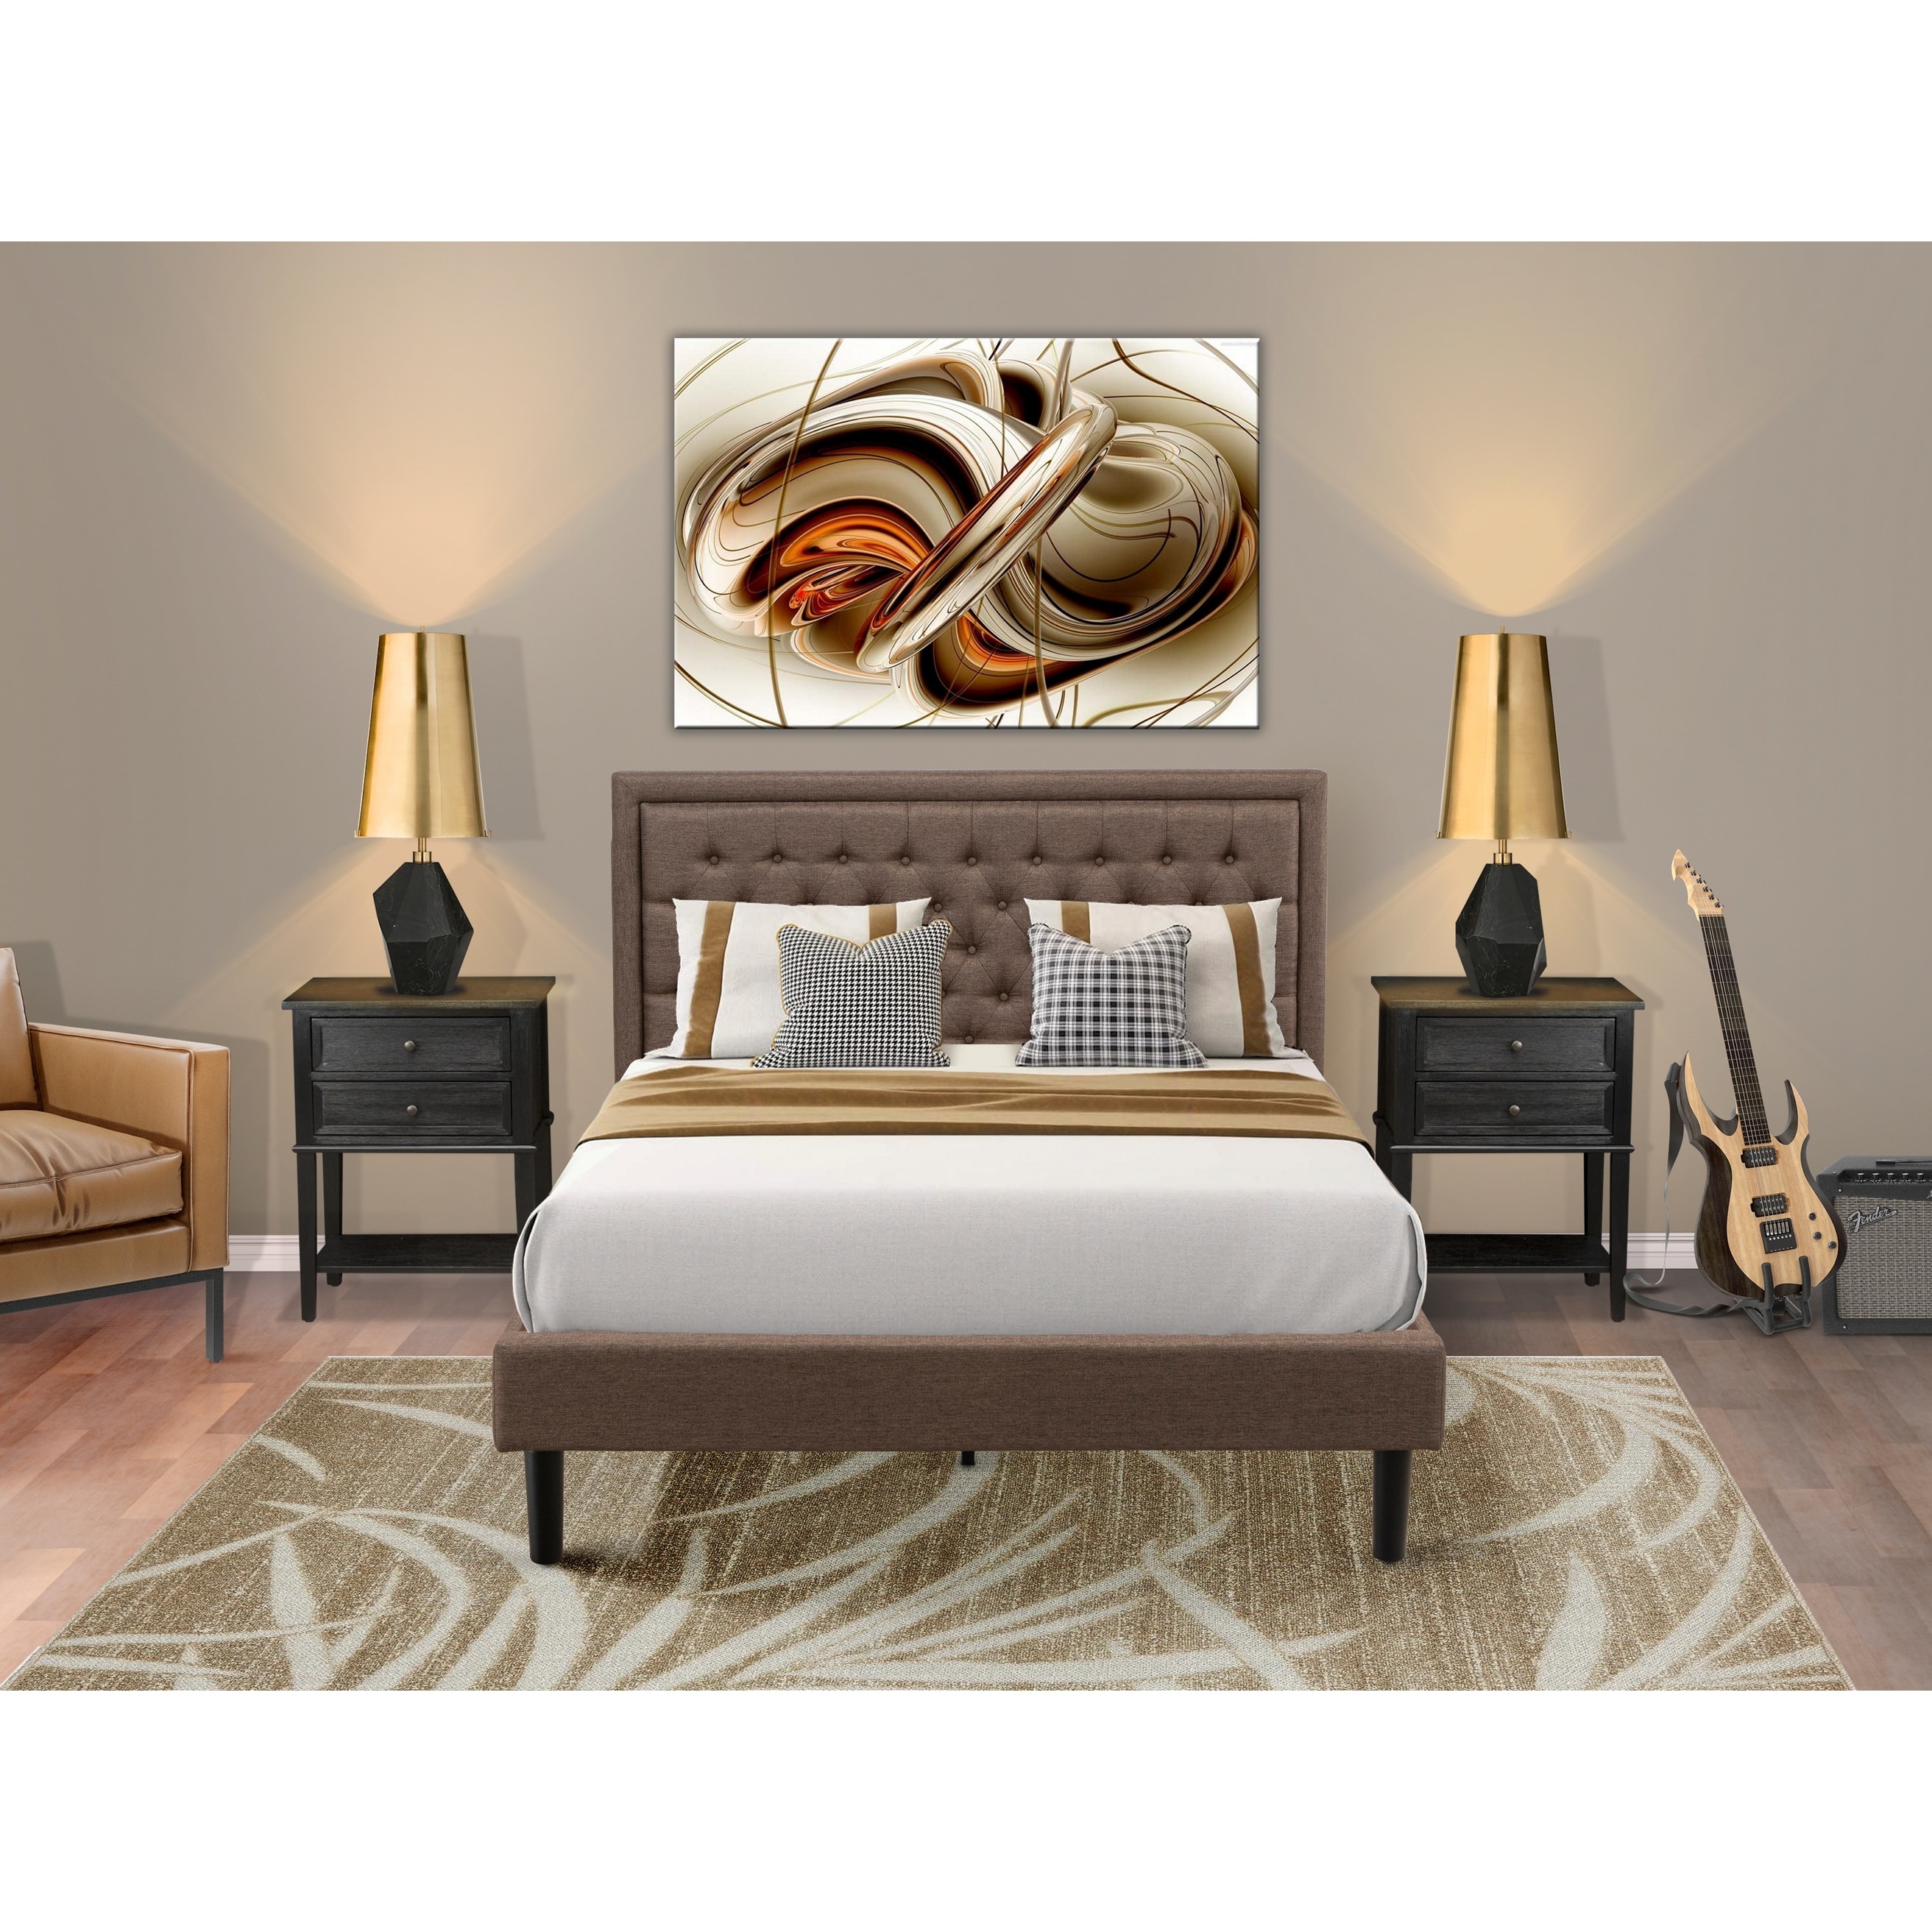 De20-k00000 1-piece Denali King Bed Frame For A King Size Bedroom Set - Brushed Gray Finish